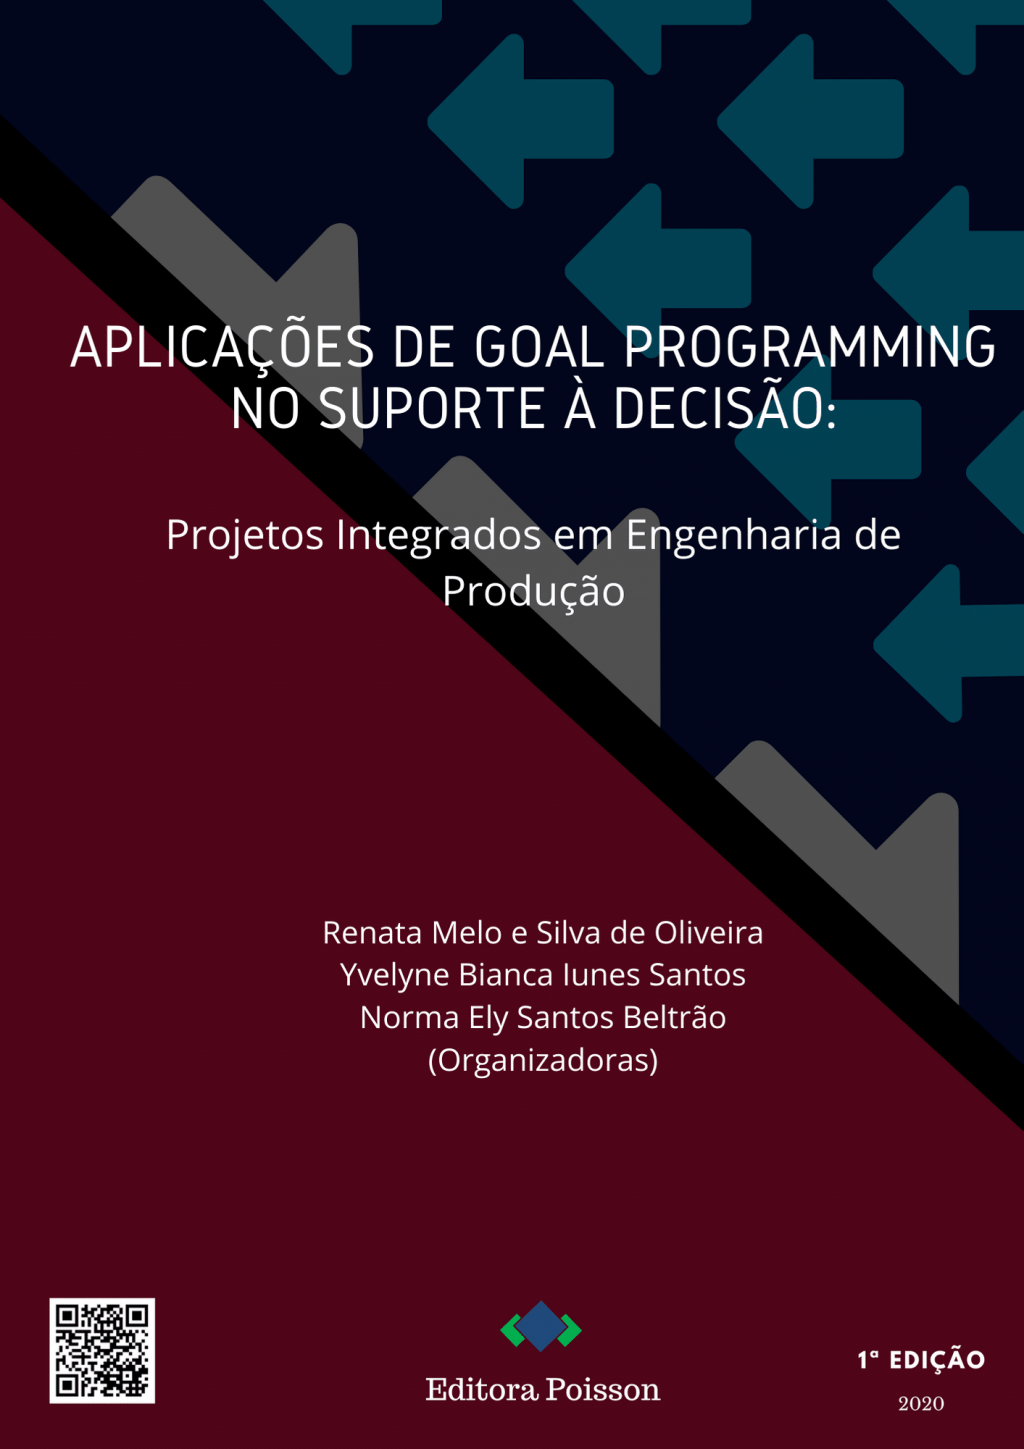 Aplicações de Goal Programming no suporte à decisão: Projetos Integrados em Engenharia de Produção